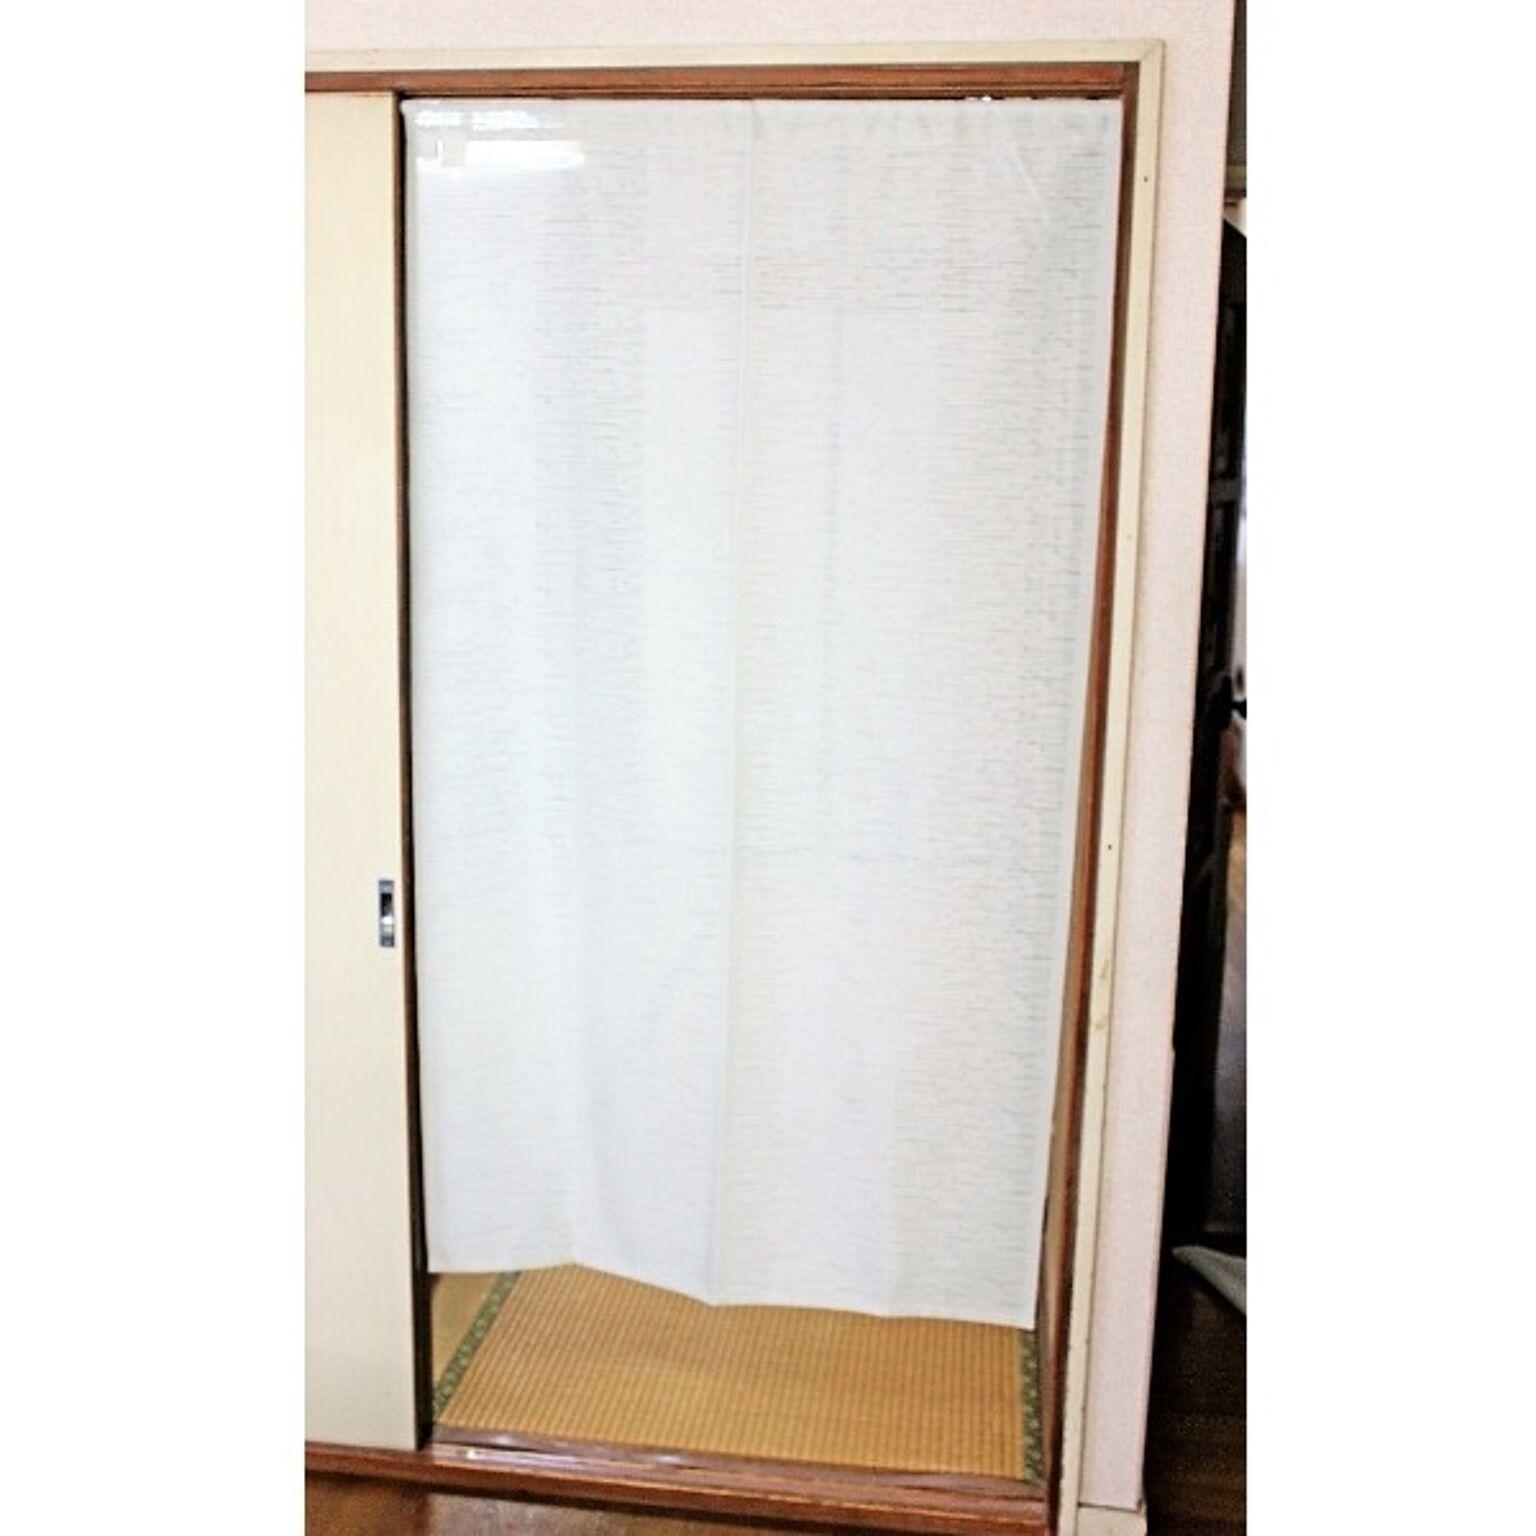 間仕切り カーテン 85×150cm アイボリー 日本製 防炎加工 取り付け簡単 突っ張り棒 のれん 暖簾 リビング ダイニング キッチン